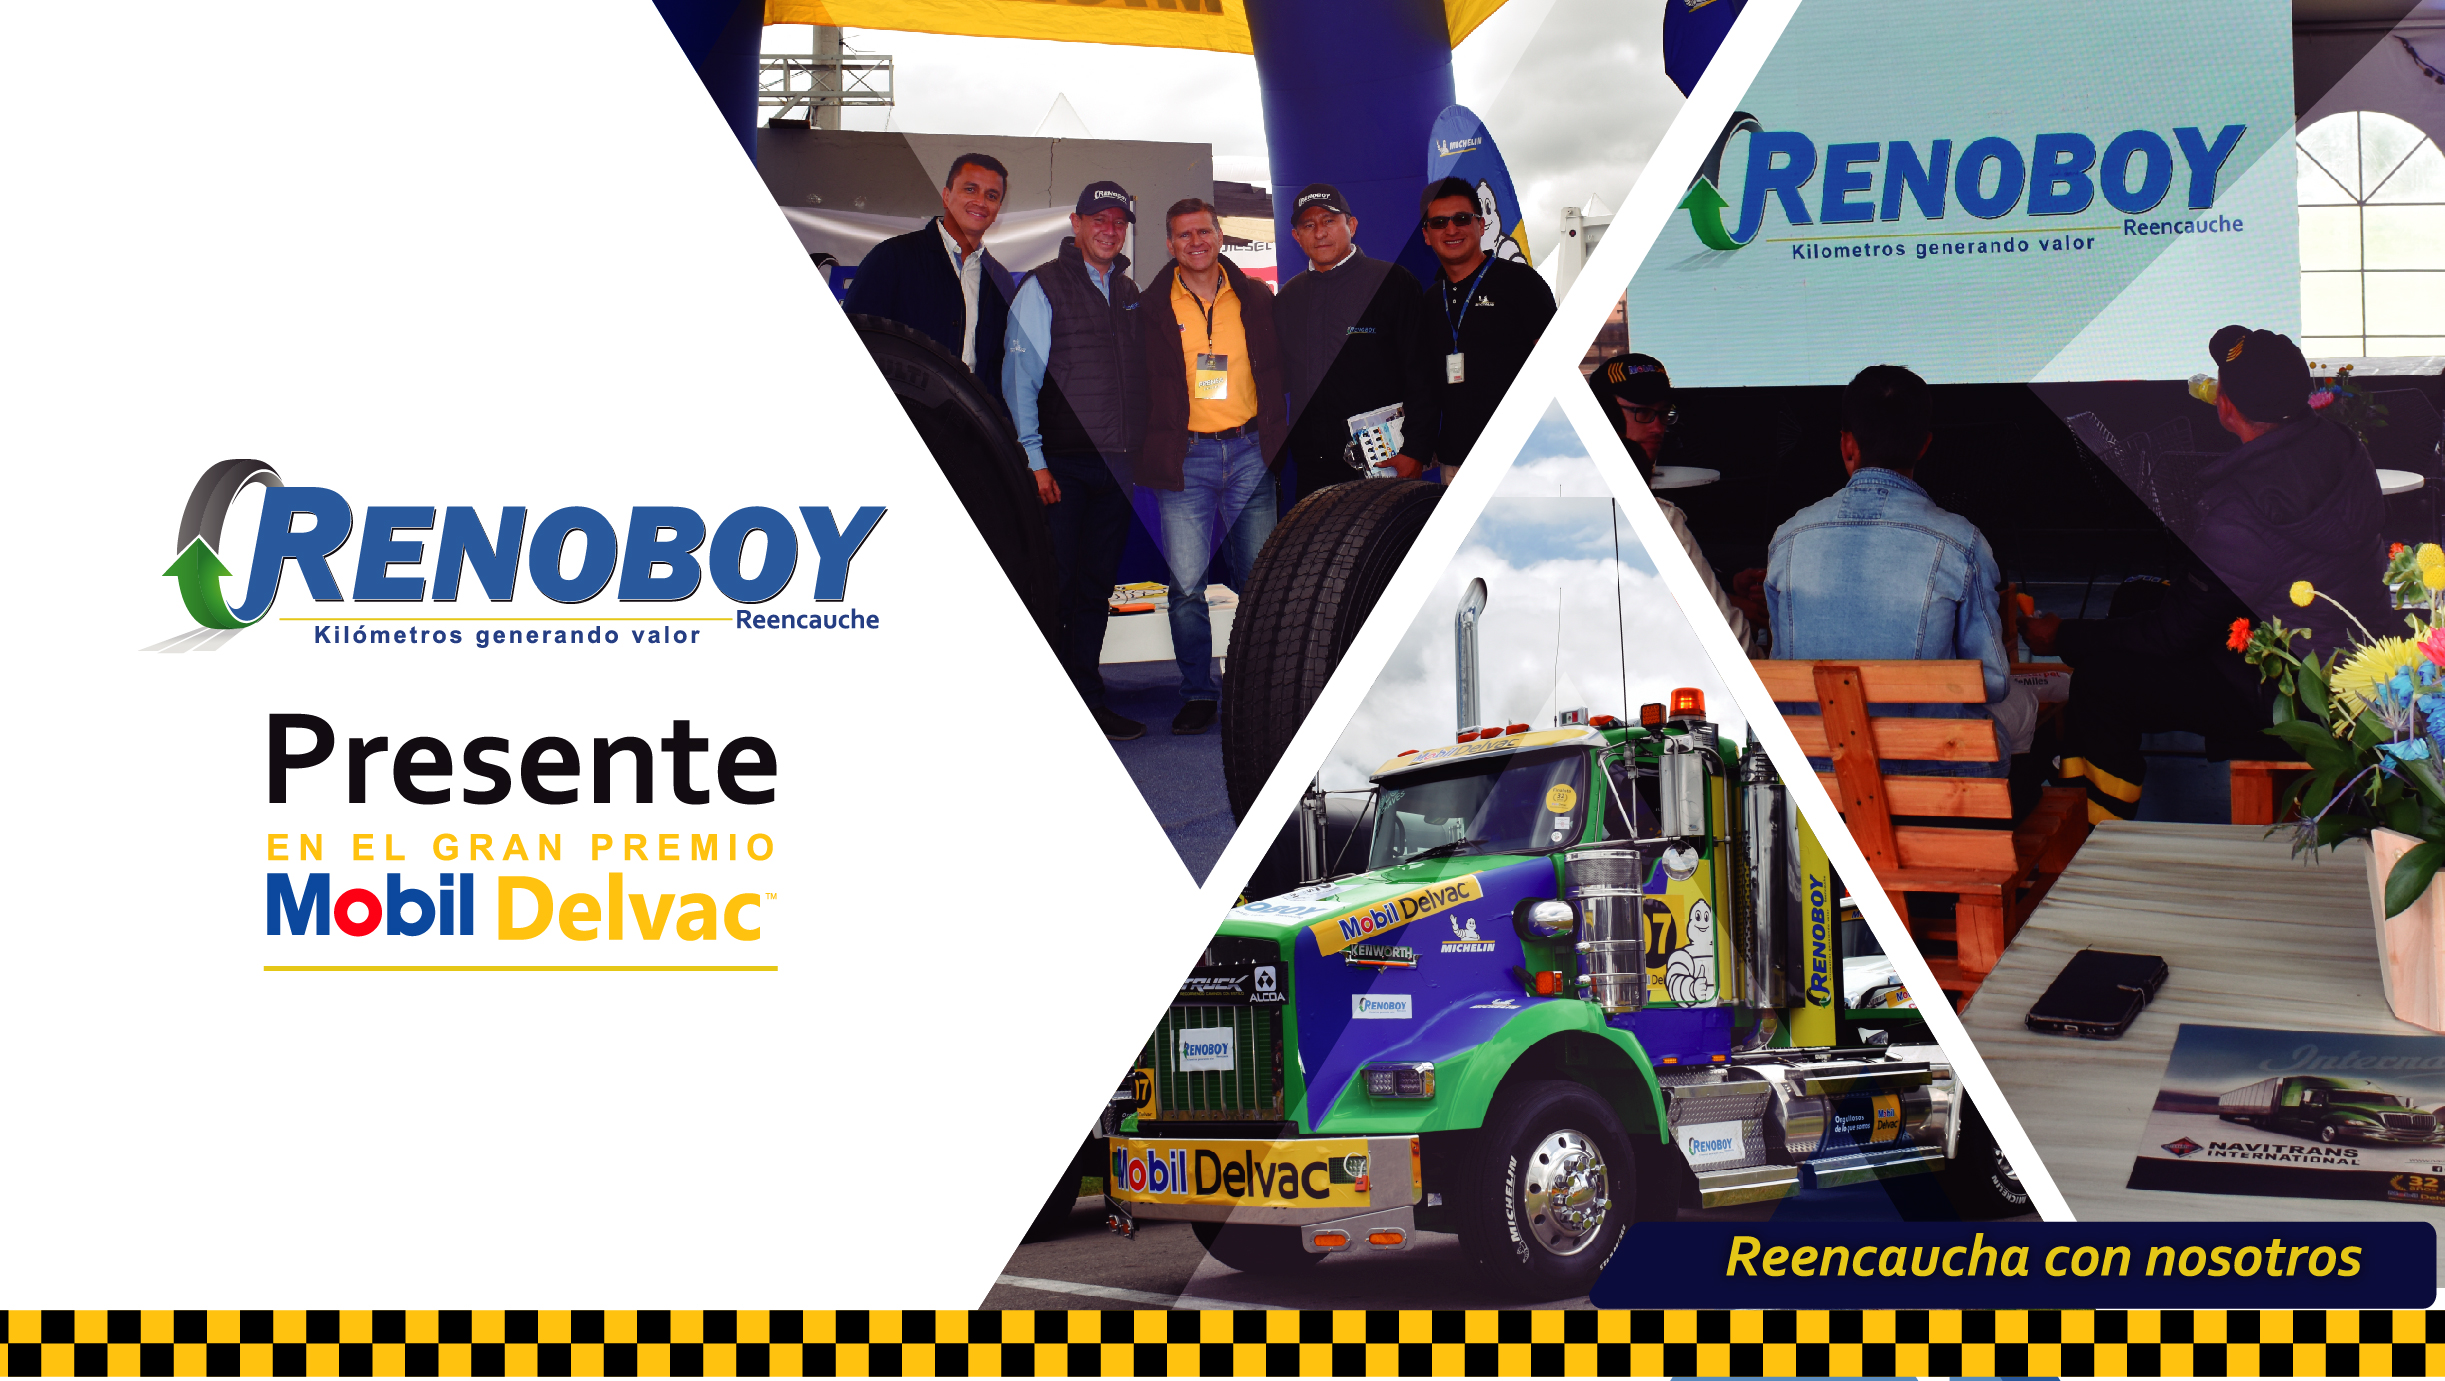 RENOBOY PRESENTE EN EL GRAN PREMIO MOBIL DELVAC 2019